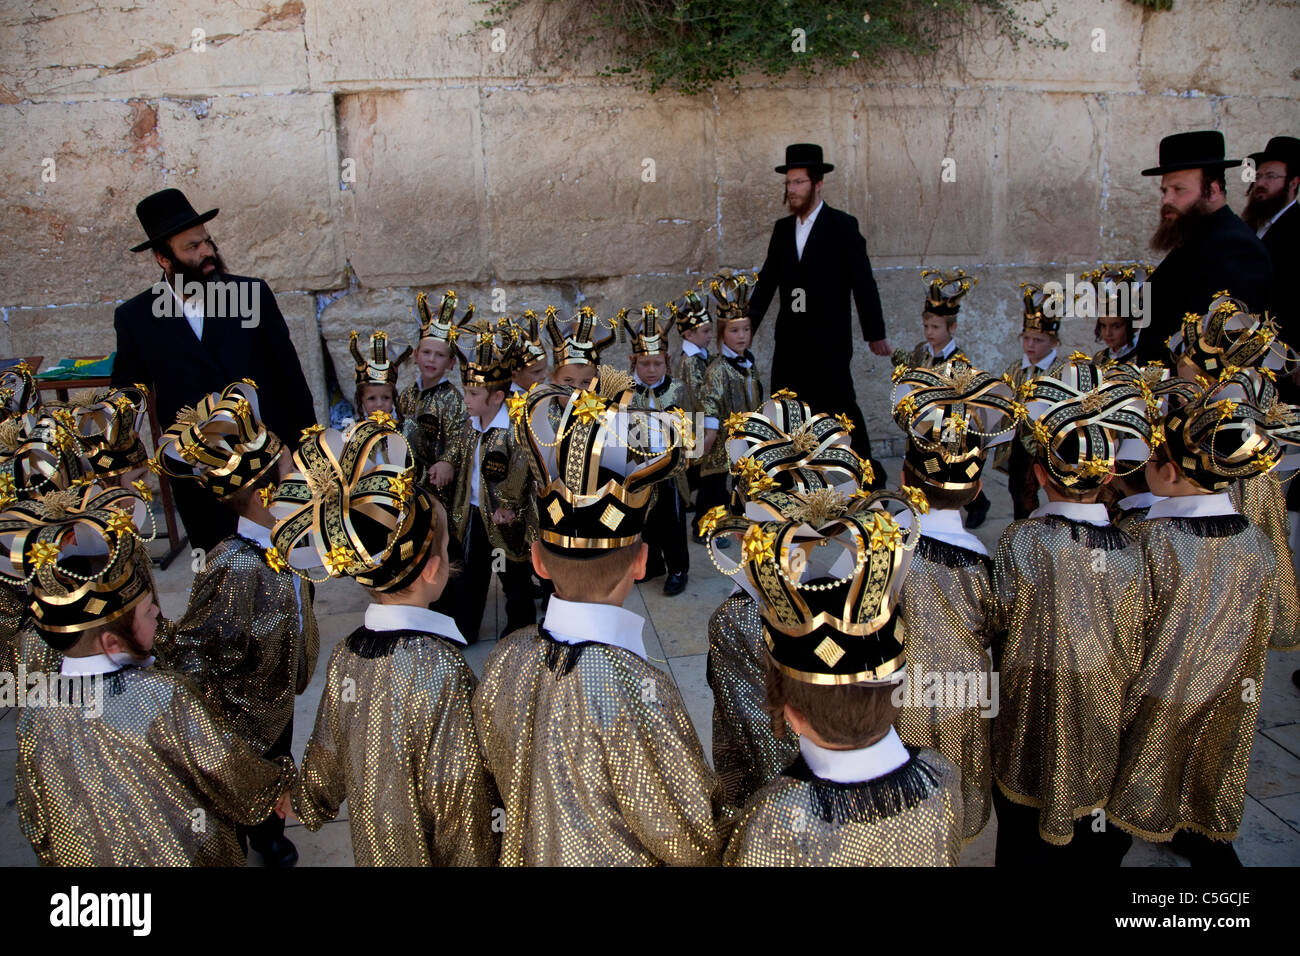 Ultra-orthodoxen Kinder tragen Thora Kronen während der Feier des jüdischen Feiertags von Shavuot, die Übergabe der Tora am Mt. Sinai, sieben Wochen nach dem Exodus des jüdischen Volkes aus Ägypten. Western Wall Altstadt Jerusalem, Israel Stockfoto